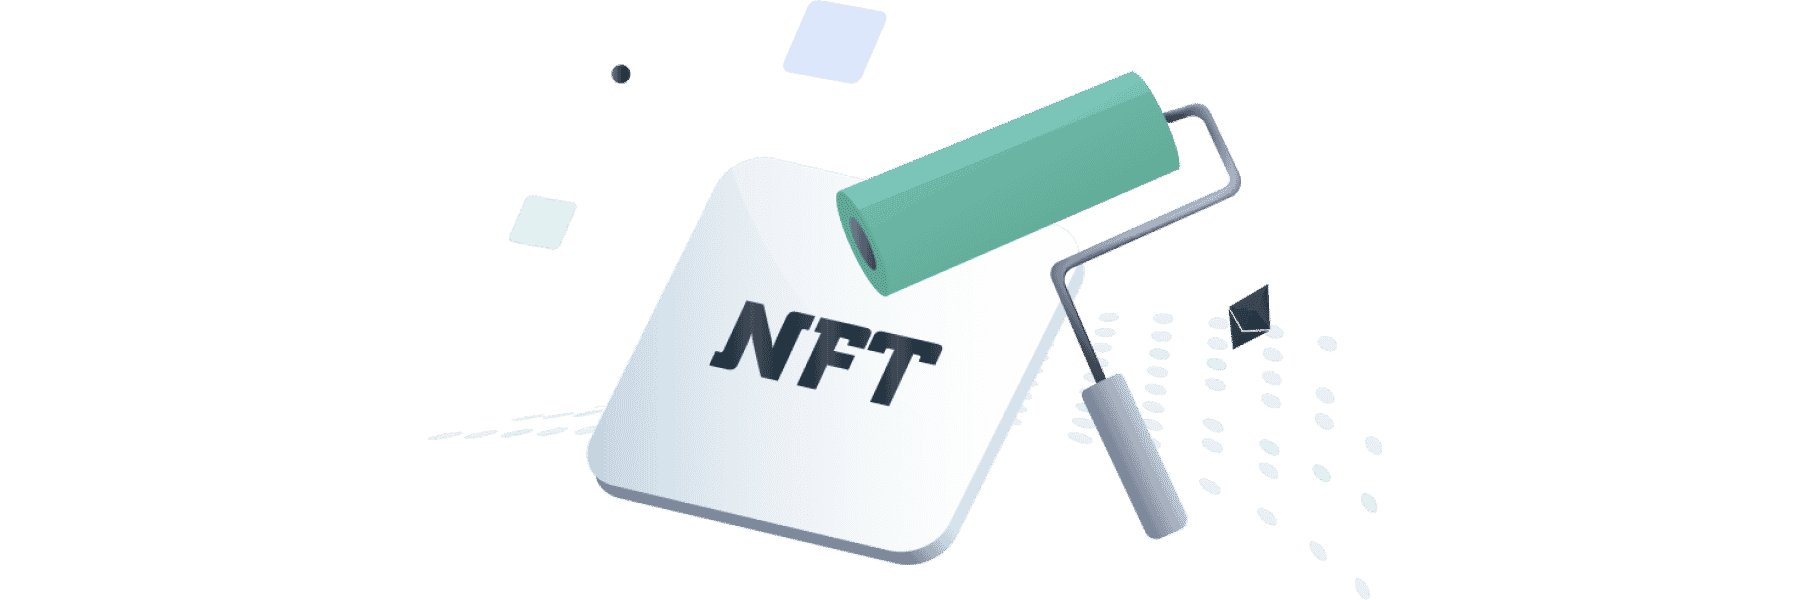 Comment créer un NFT sur iPhone ?